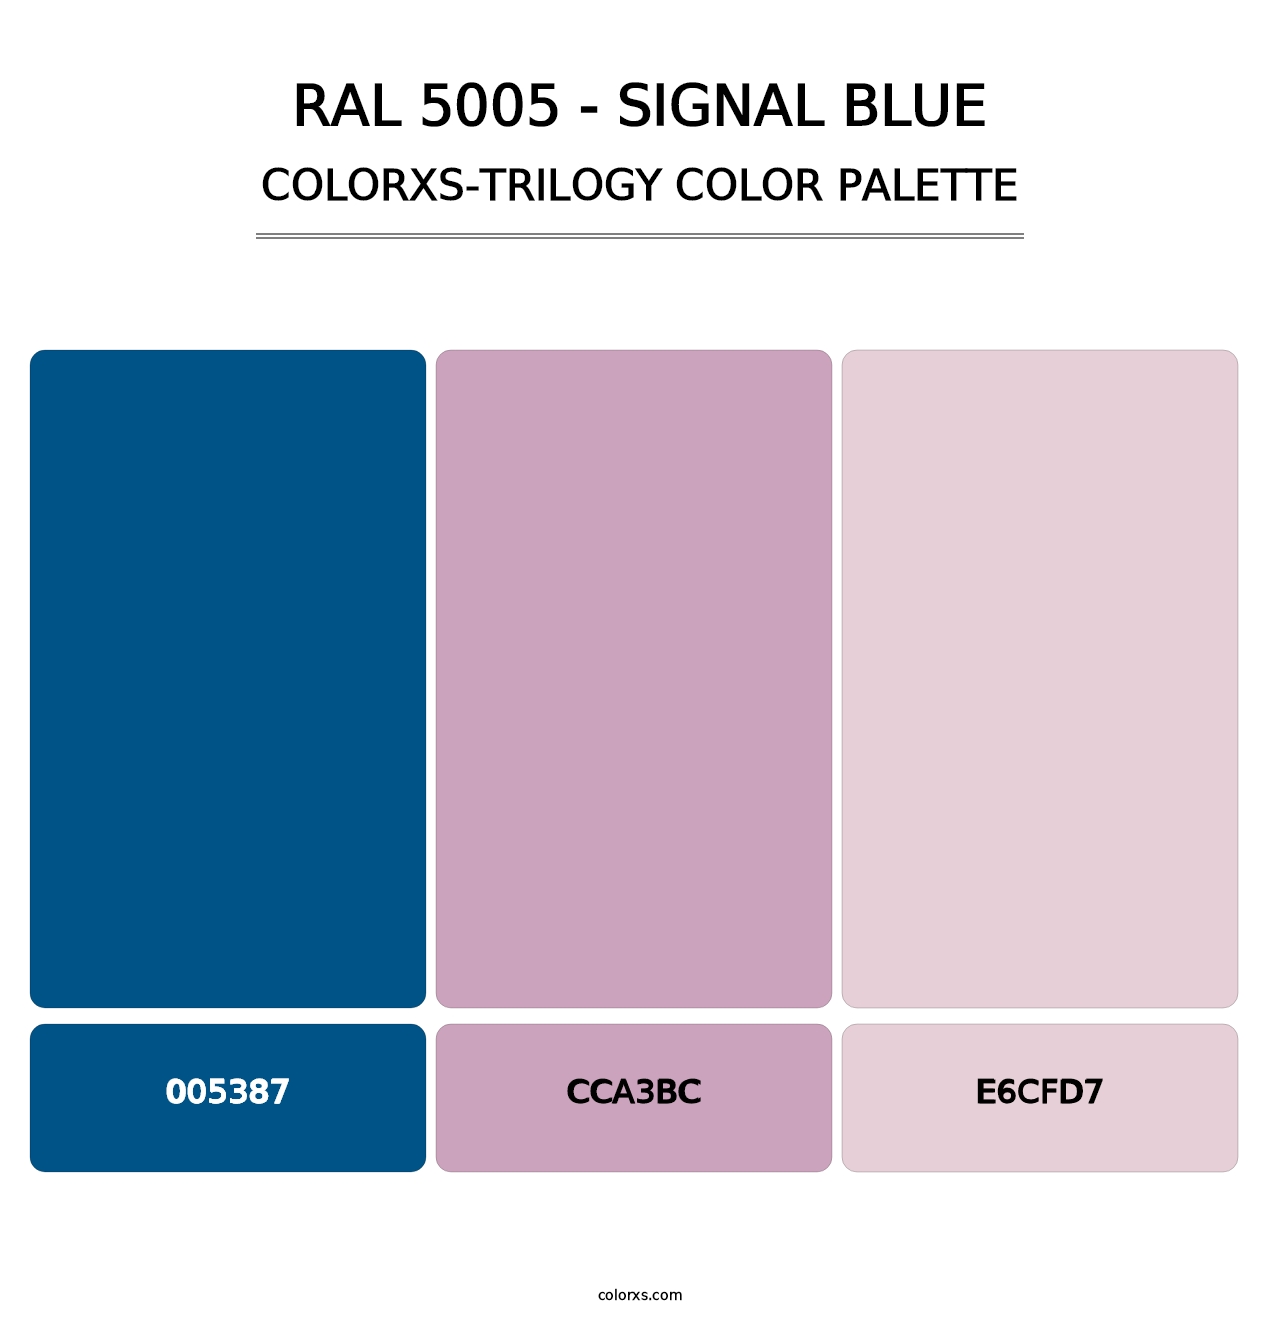 RAL 5005 - Signal Blue - Colorxs Trilogy Palette